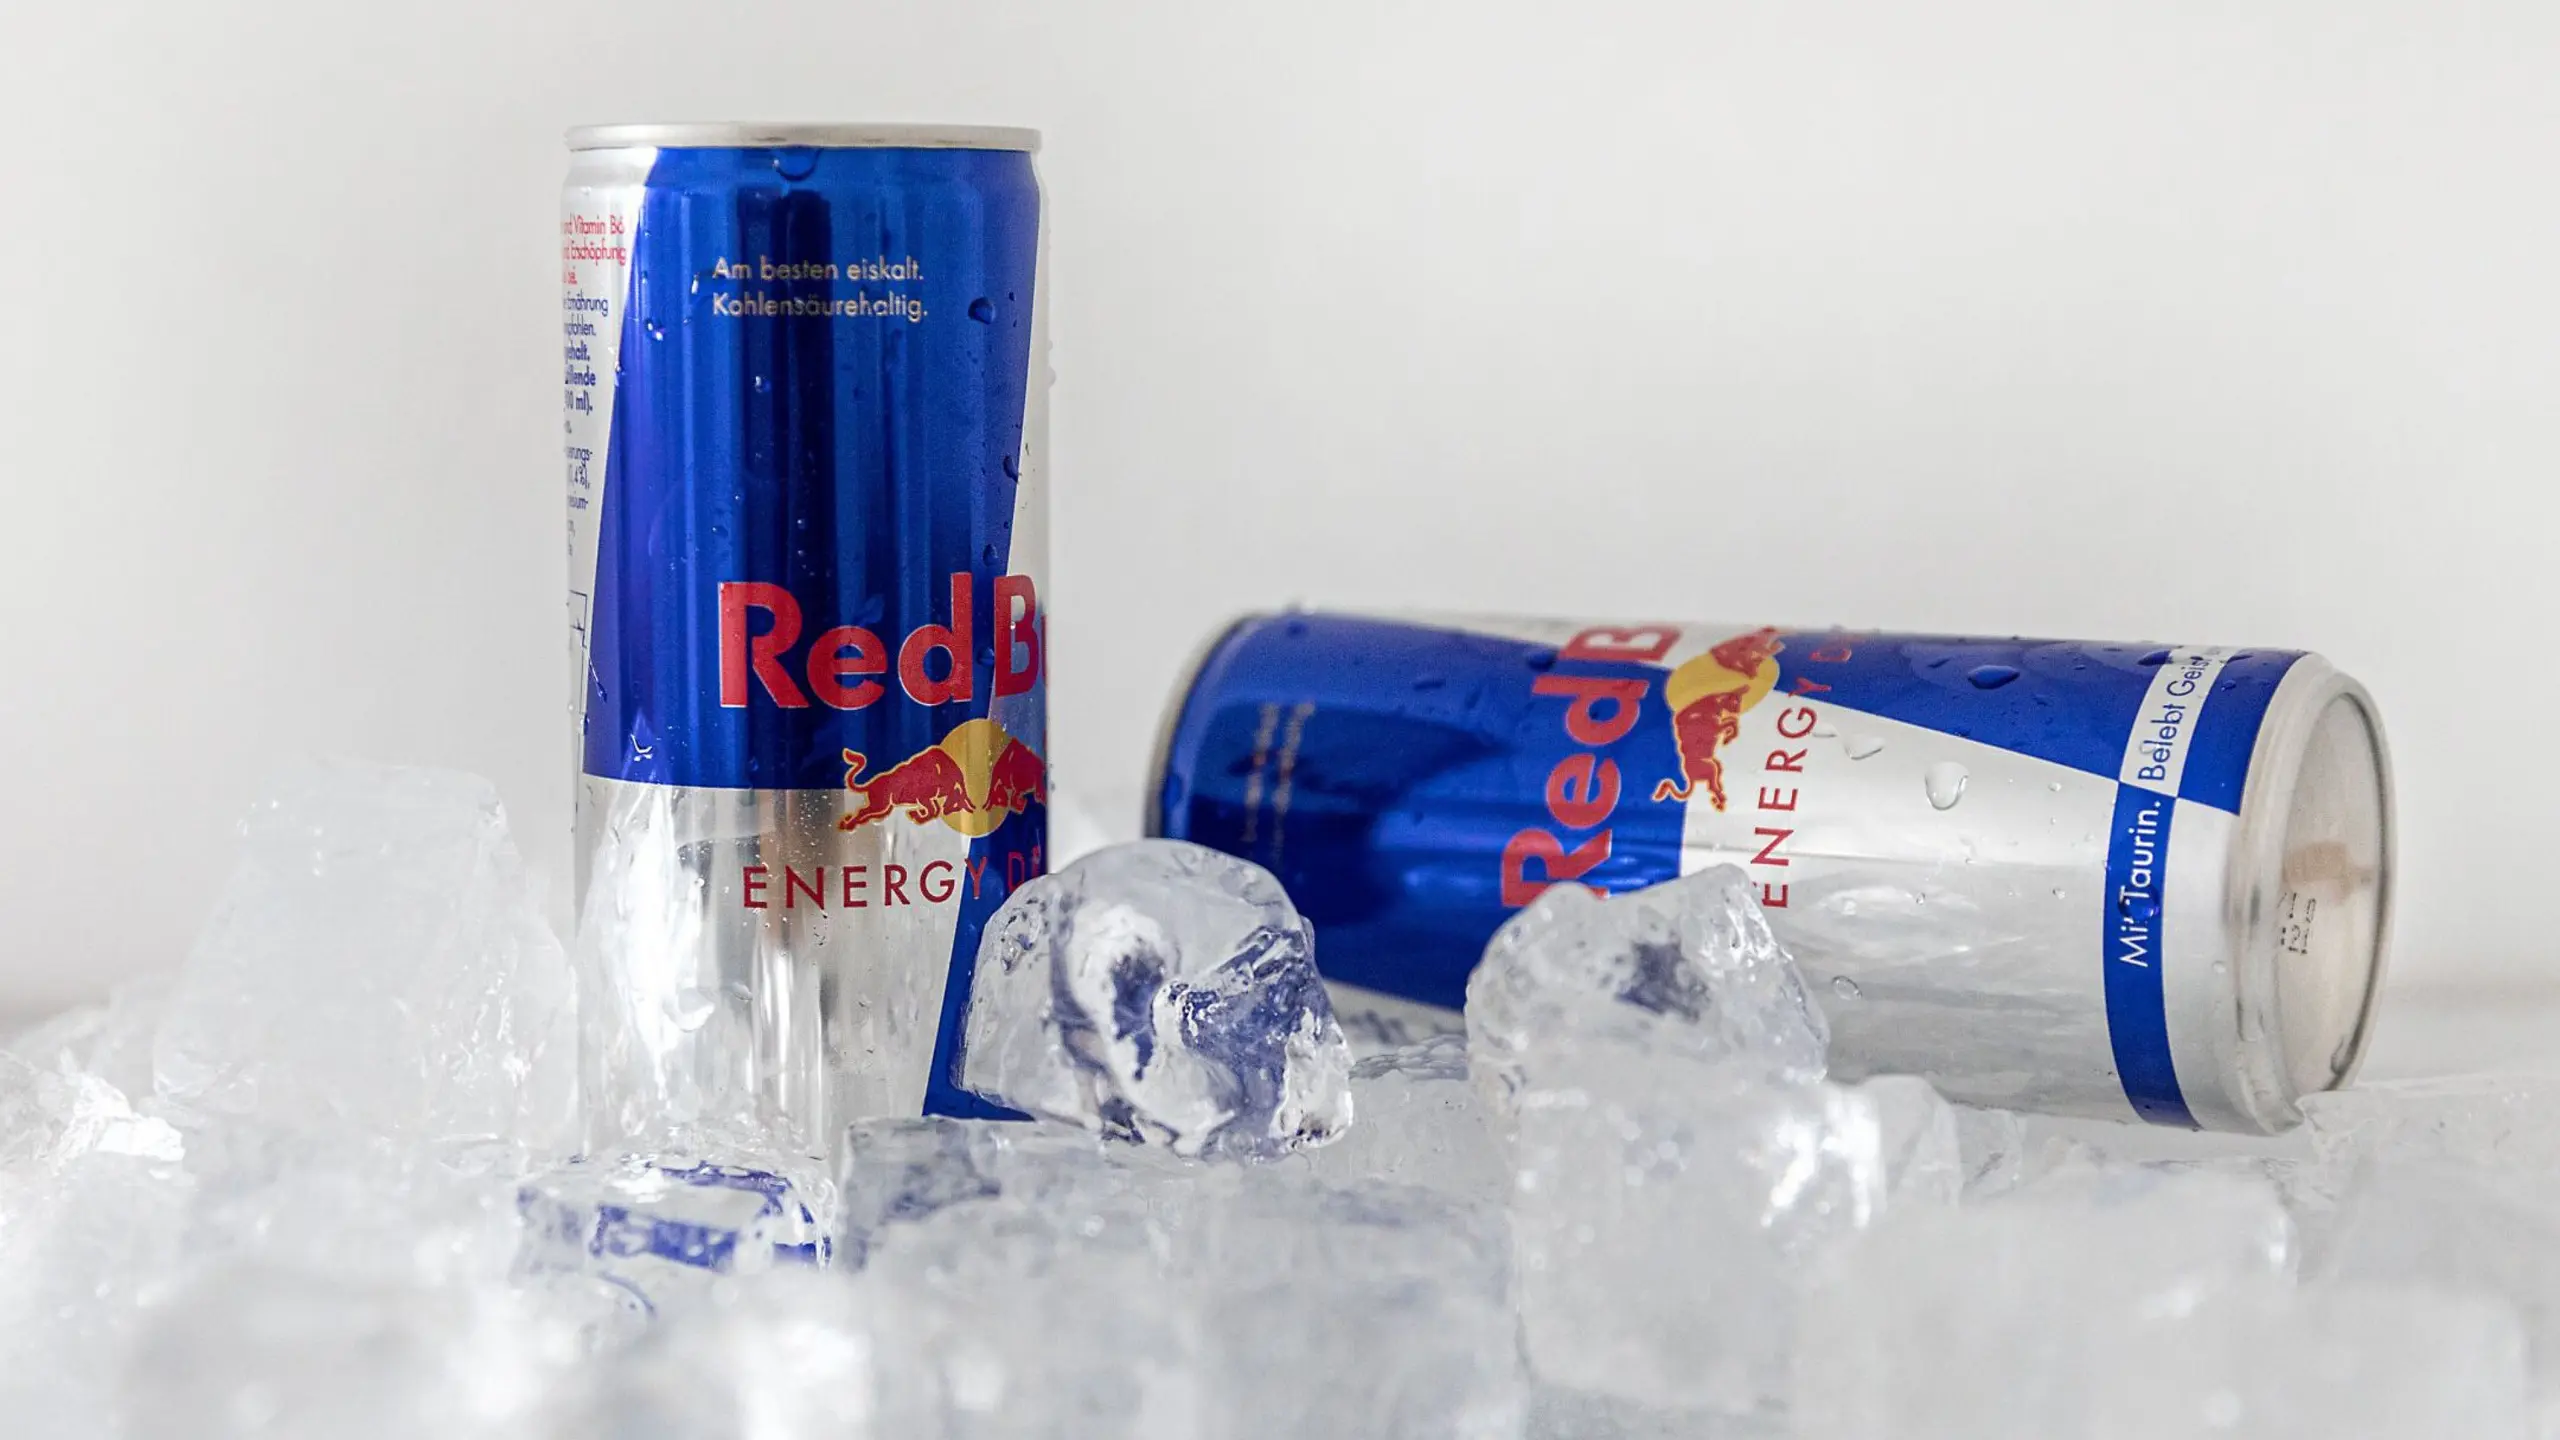 Der Energydrink-Hersteller Red Bull hat 2022 ein Rekordergebnis erzielt.